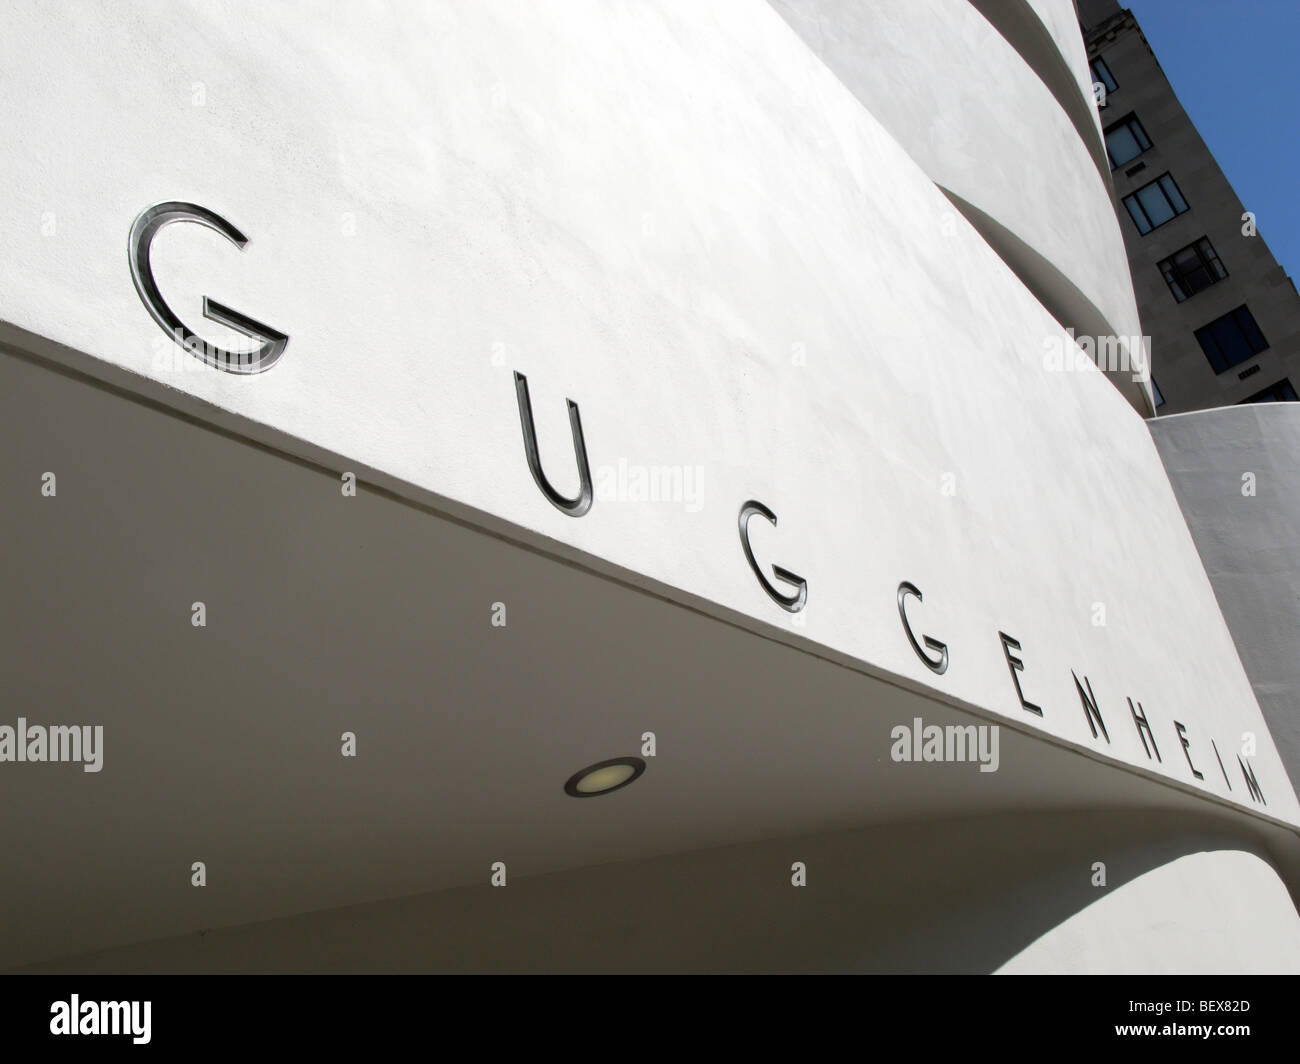 Guggenheim Museum, New York Stock Photo